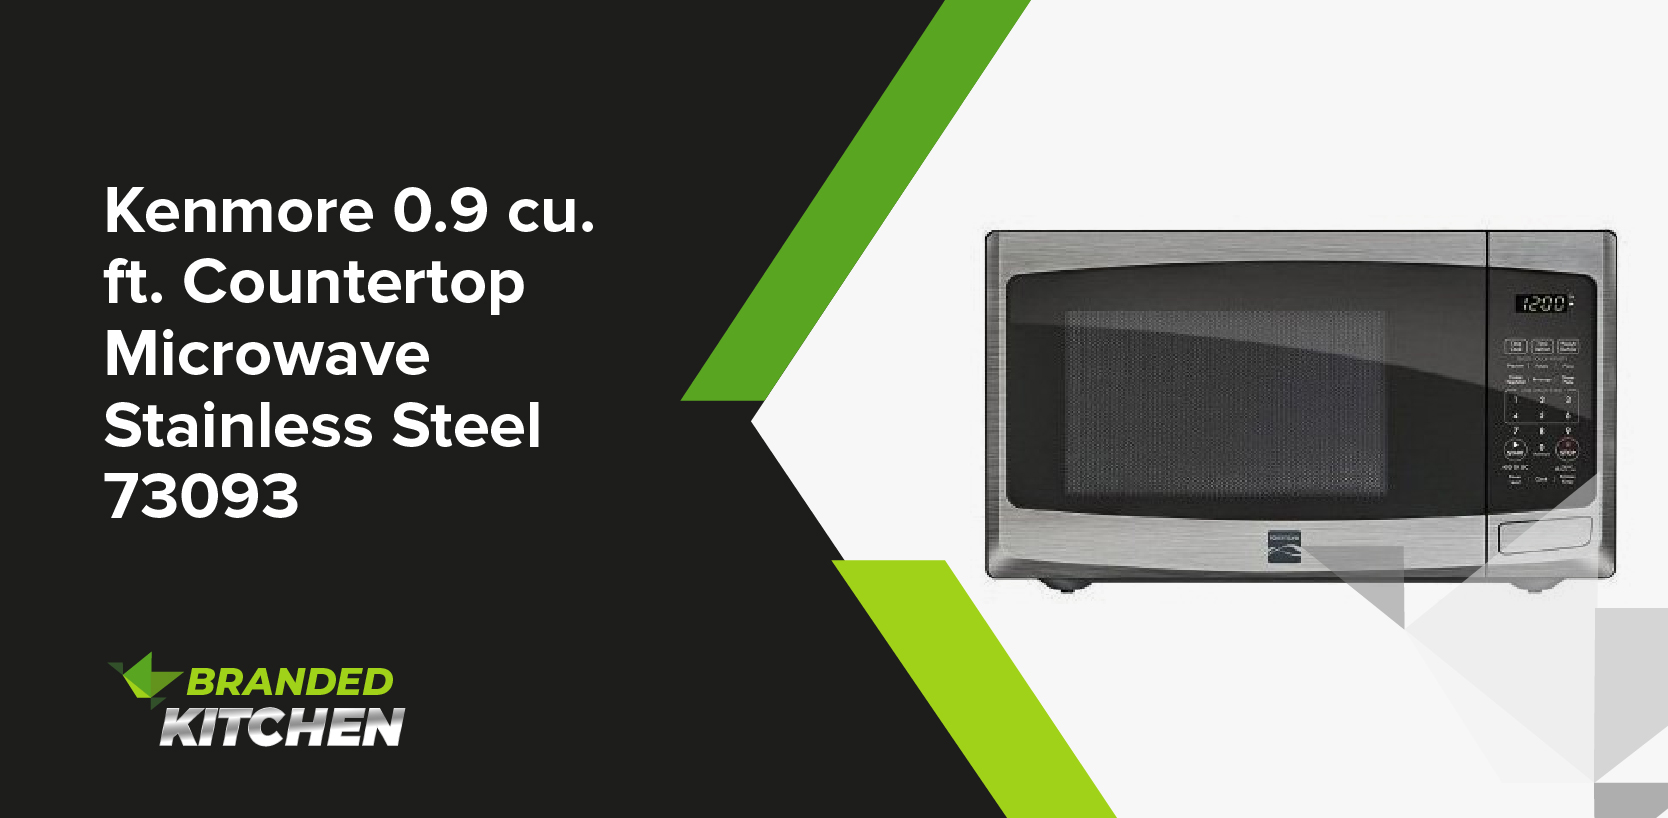 Kenmore 0.9 cu. Ft. Countertop Microwave Stainless Steel 73093